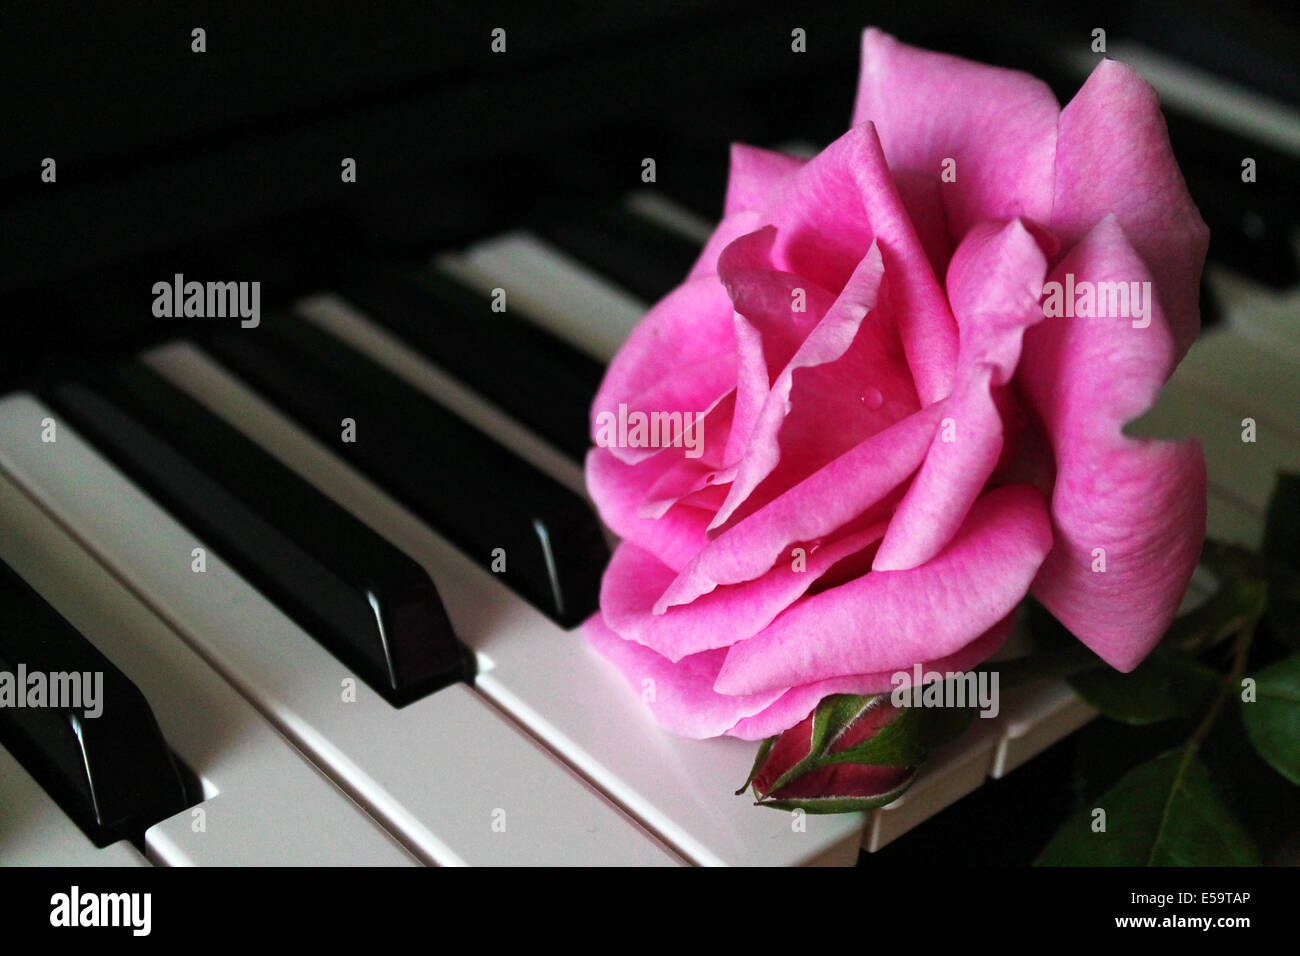 Rosa rosa sul pianoforte Foto Stock